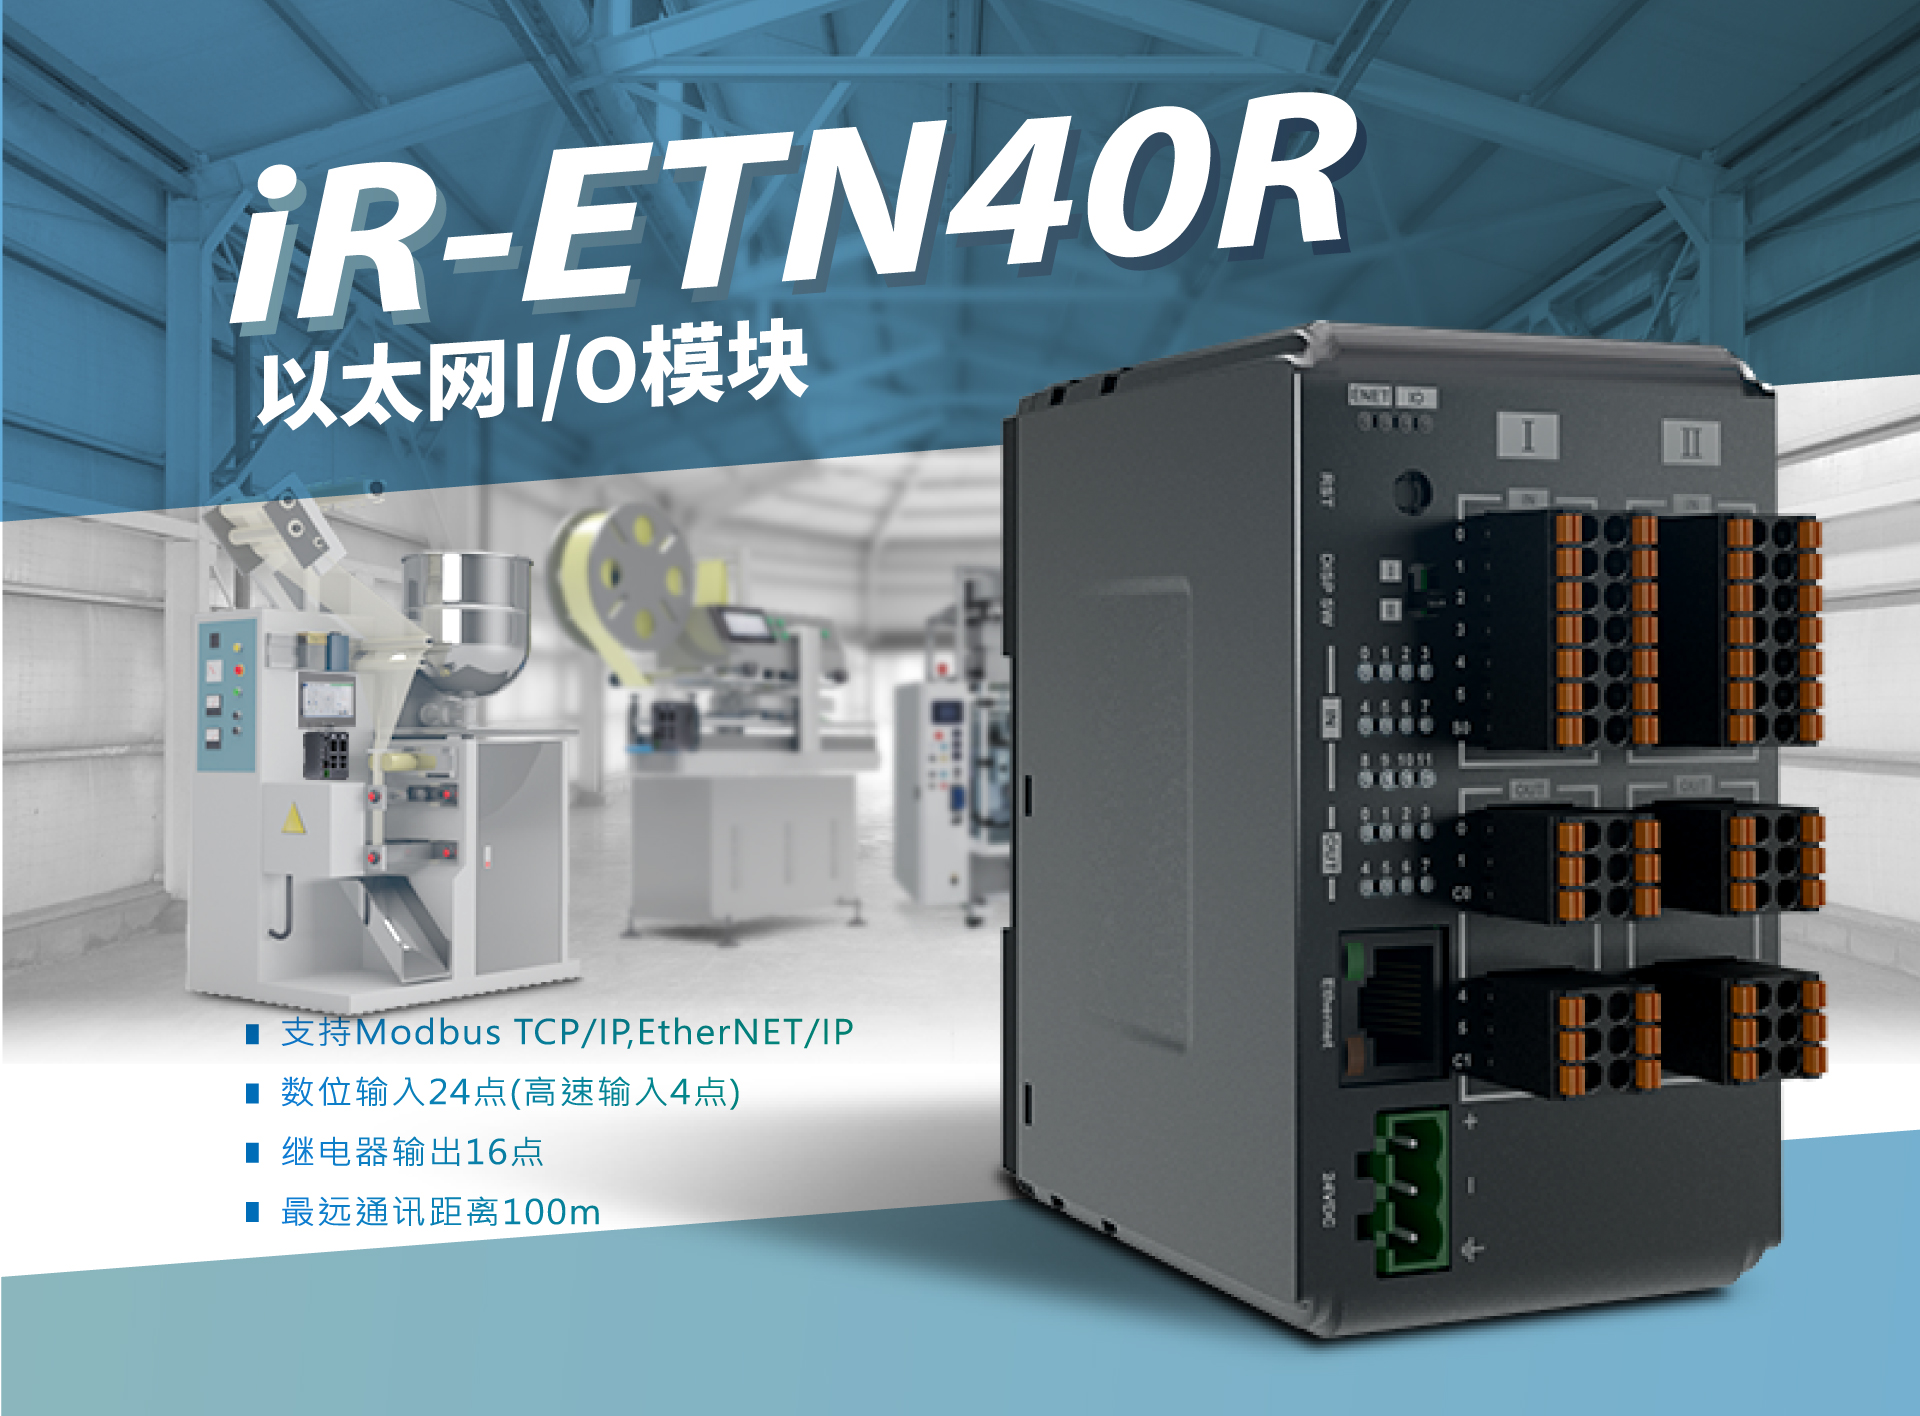 HMI实现PLC功能的好搭档！| iR-ETN40R 新品发布